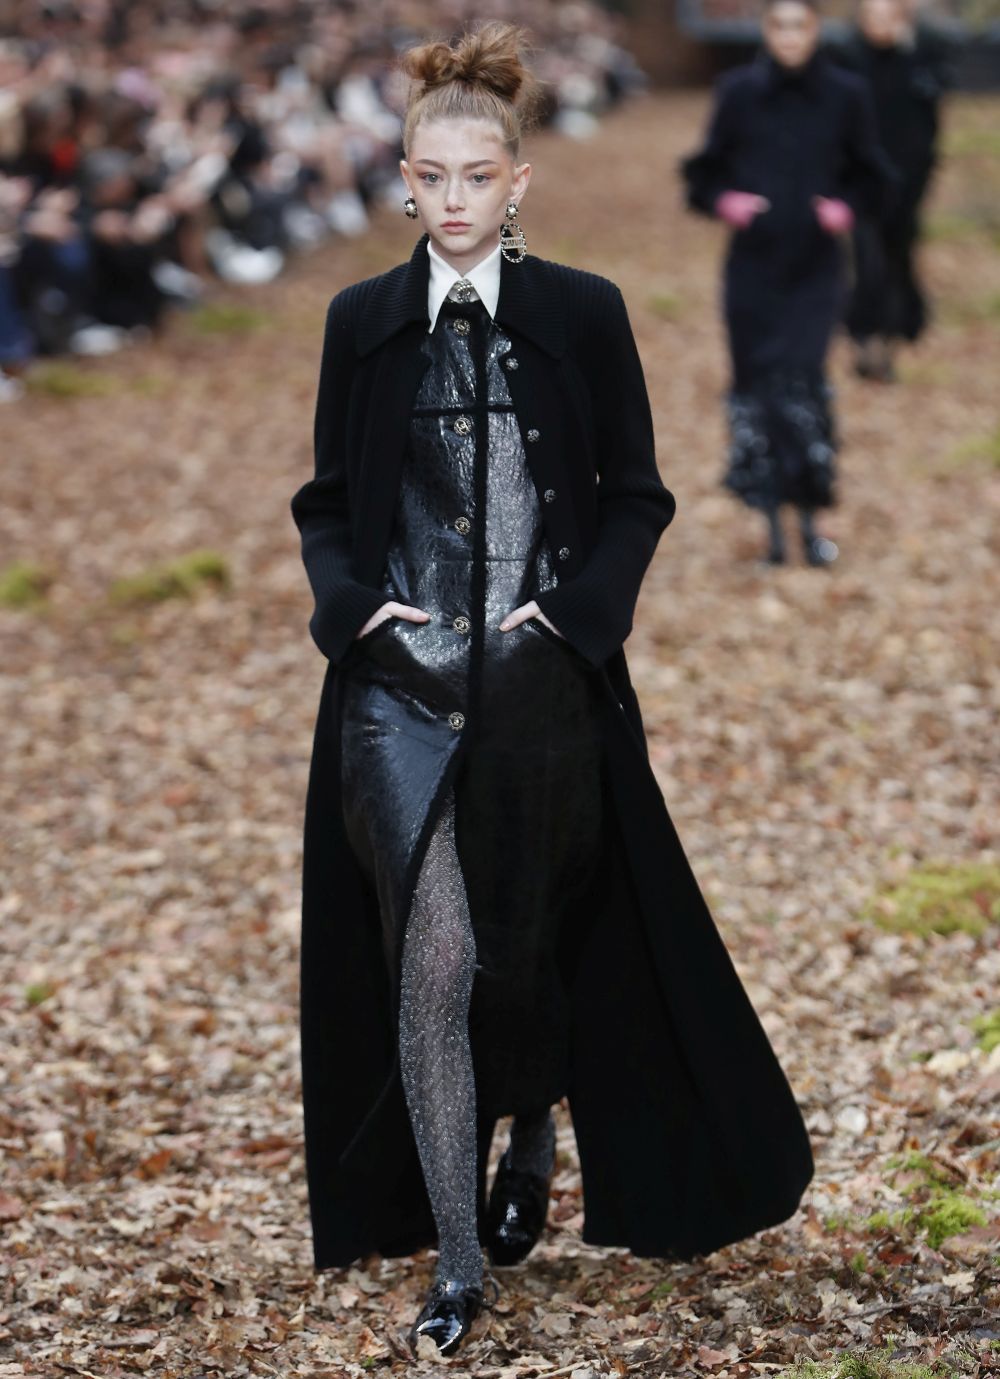 <strong>Карл Лагерфелд </strong>облече манекенките в<strong> дрехи с щамповани листа </strong>за ревюто, което<strong> възпя есента насред мъглива гора в Гран пале в Париж.</strong><br />
 <br />
В колекцията есен/зима, представена през последния ден на<strong> Парижката седмица на модата</strong>, има някои доста непрактични облекла за разходка сред природата, като златисти ботушки или черната рокличка. Престижната френска модна къща обаче предложи и някои удобни и топли модели - от ватирани панталони и кожени пончо до палта с пера по маншетите.<br />
 <br />
Характерните костюми от туид през следващата зима ще са с по-дълги тесни поли. Най-впечатляващи бяха палтата - дълги, с щамповани листа в комбинация със синьо и розово, или зелено и оранжево.<br />
 